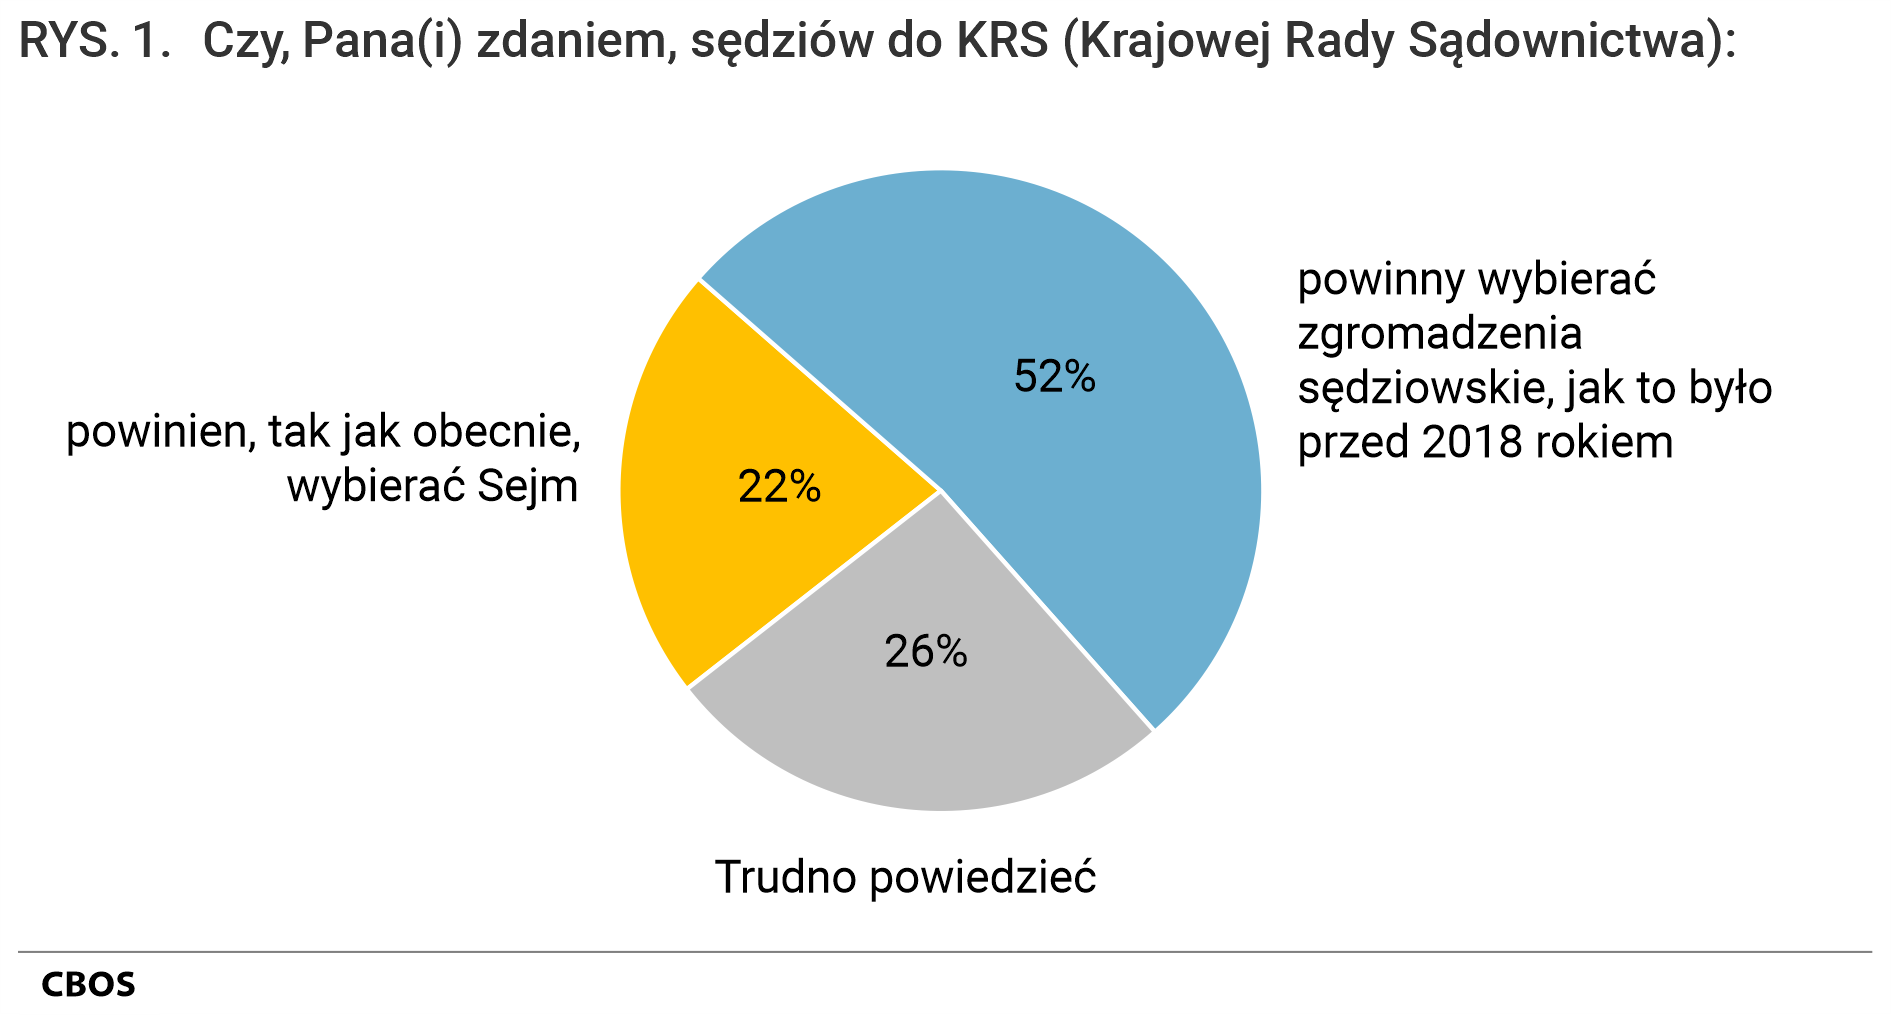 Rysunek 1 - Czy, Pana(Pani) zdaniem, sędziów do KRS (Krajowej Rady Sądownictwa): powinien, tak jak obecnie, wybierać Sejm 22%; powinny wybierać zgromadzenia sędziowskie, jak to było przed 2018 rokiem 52%; Trudno powiedzieć 26%.